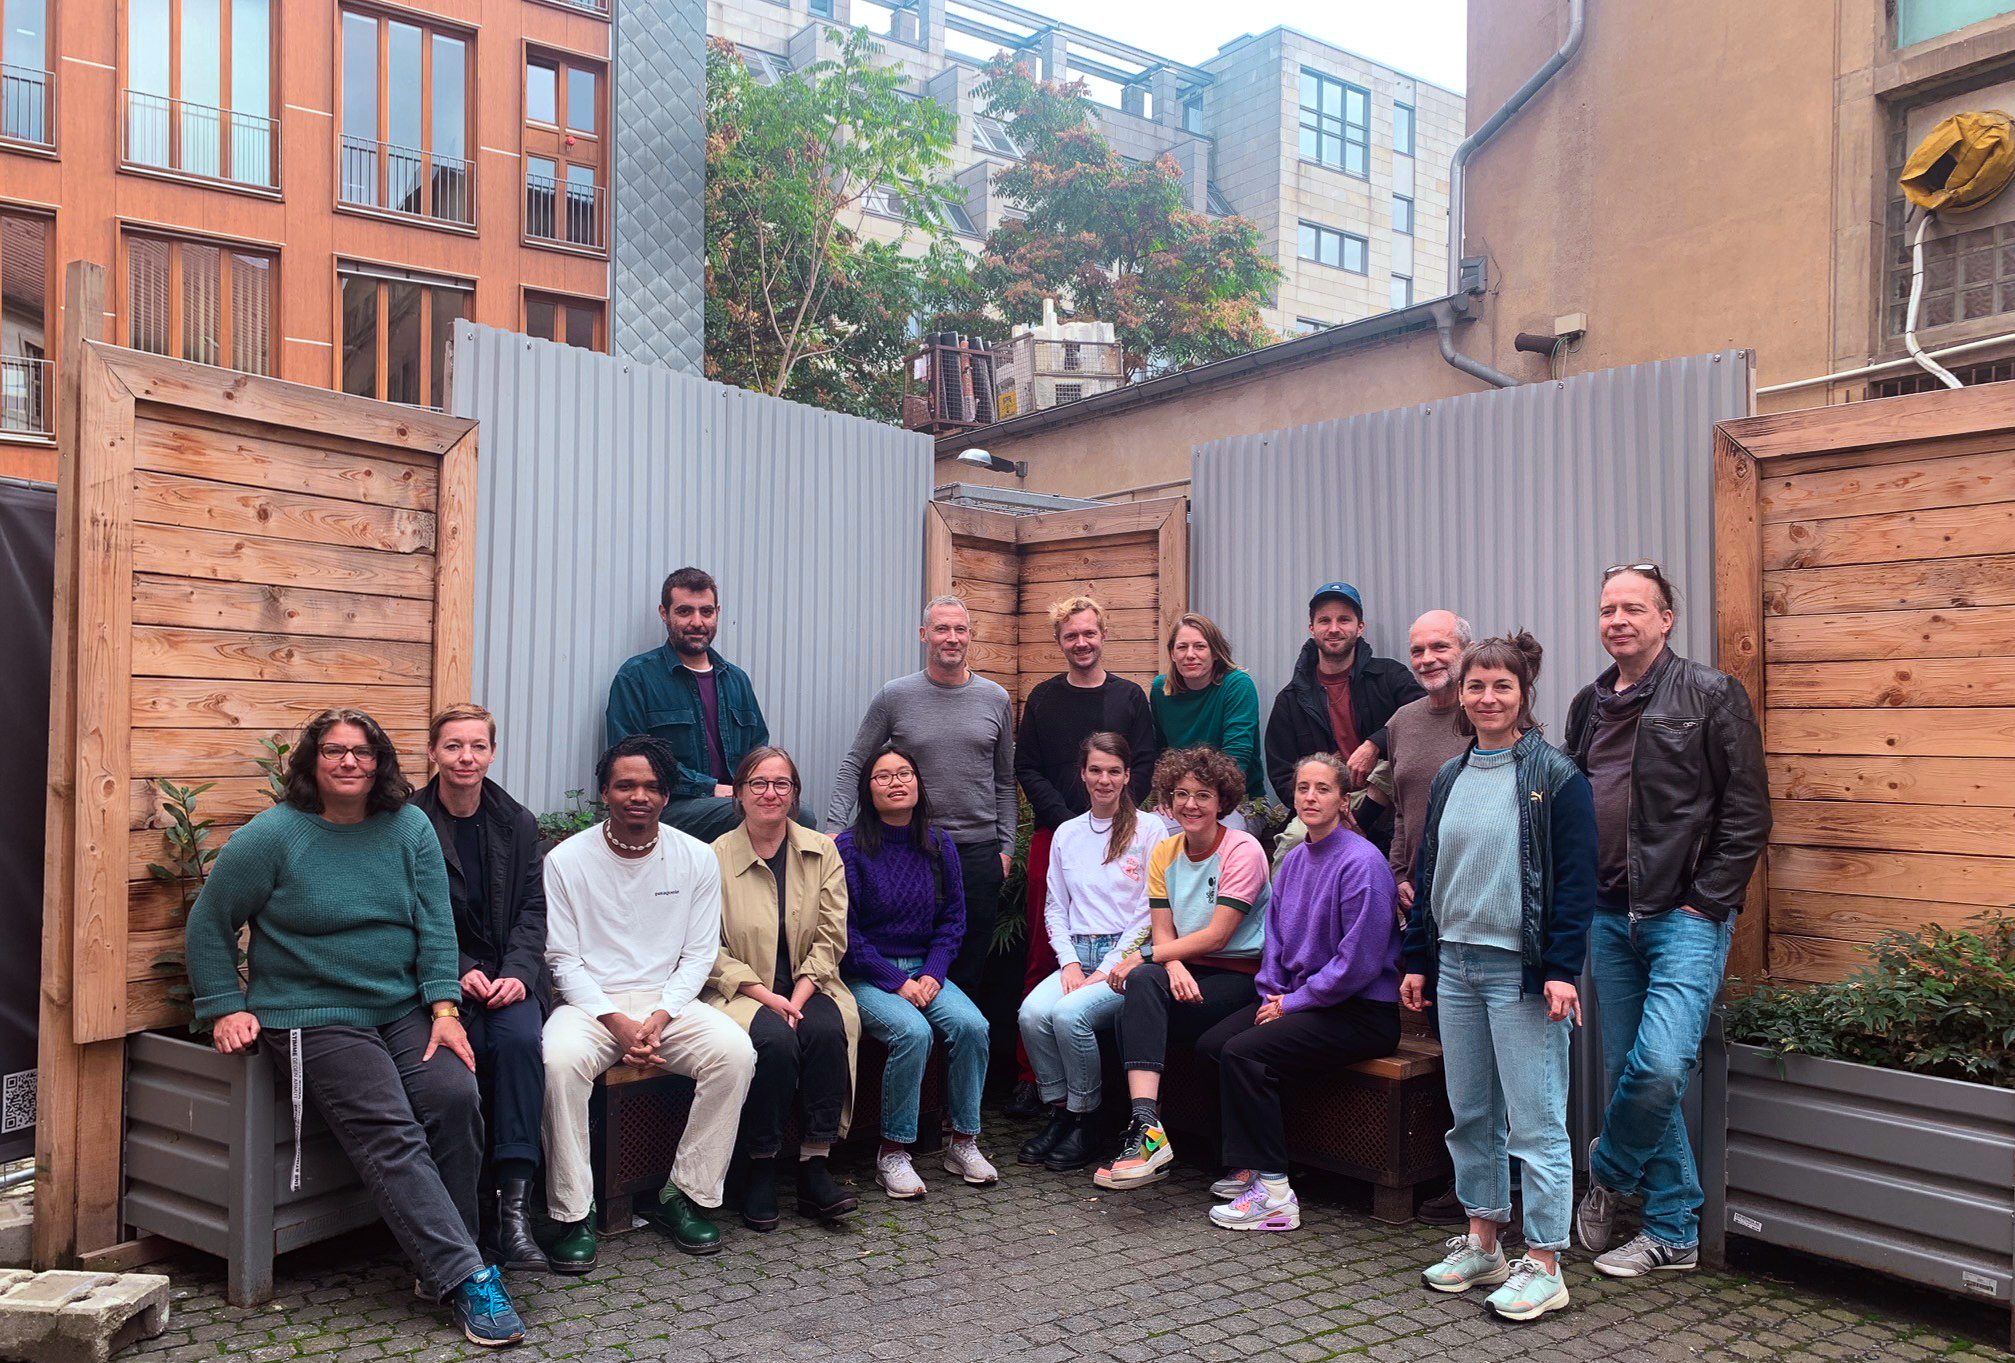 Das Team der Kulturraum Berlin gGmbH in einem Gruppenfoto, einige sitzen, andere stehen. Das Foto ist auf einem Innenhof entstanden